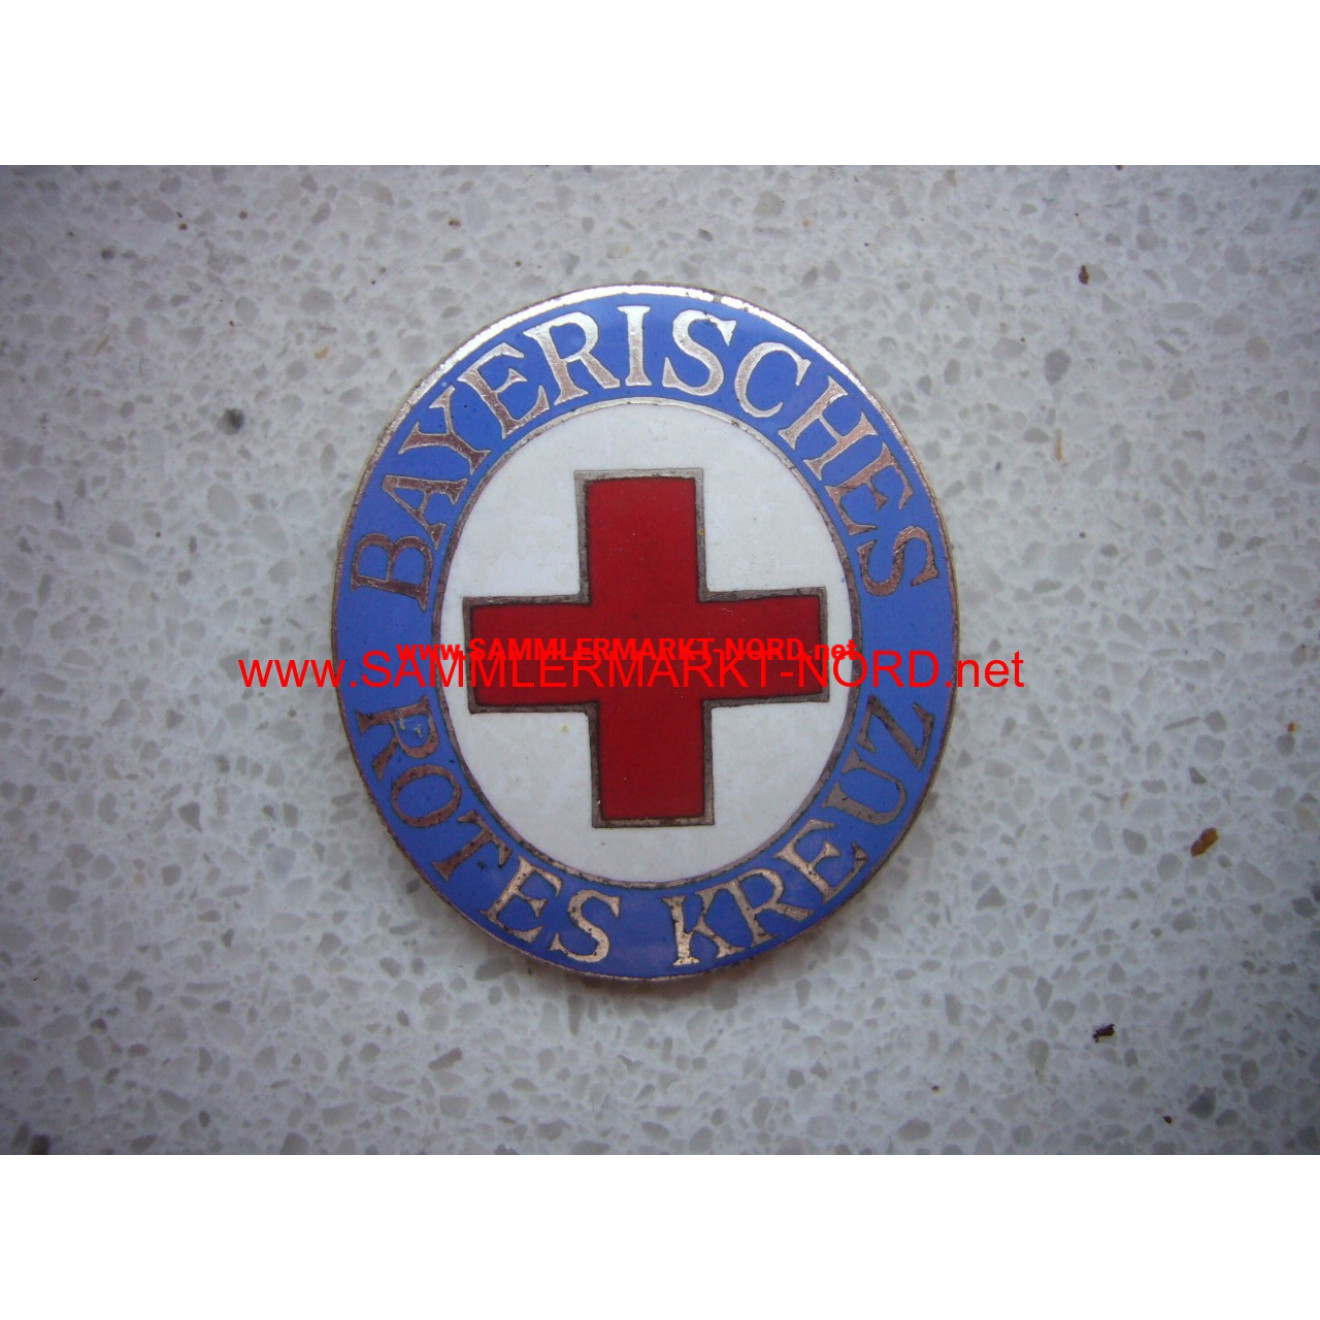 Bavarian Red Cross - service brooch